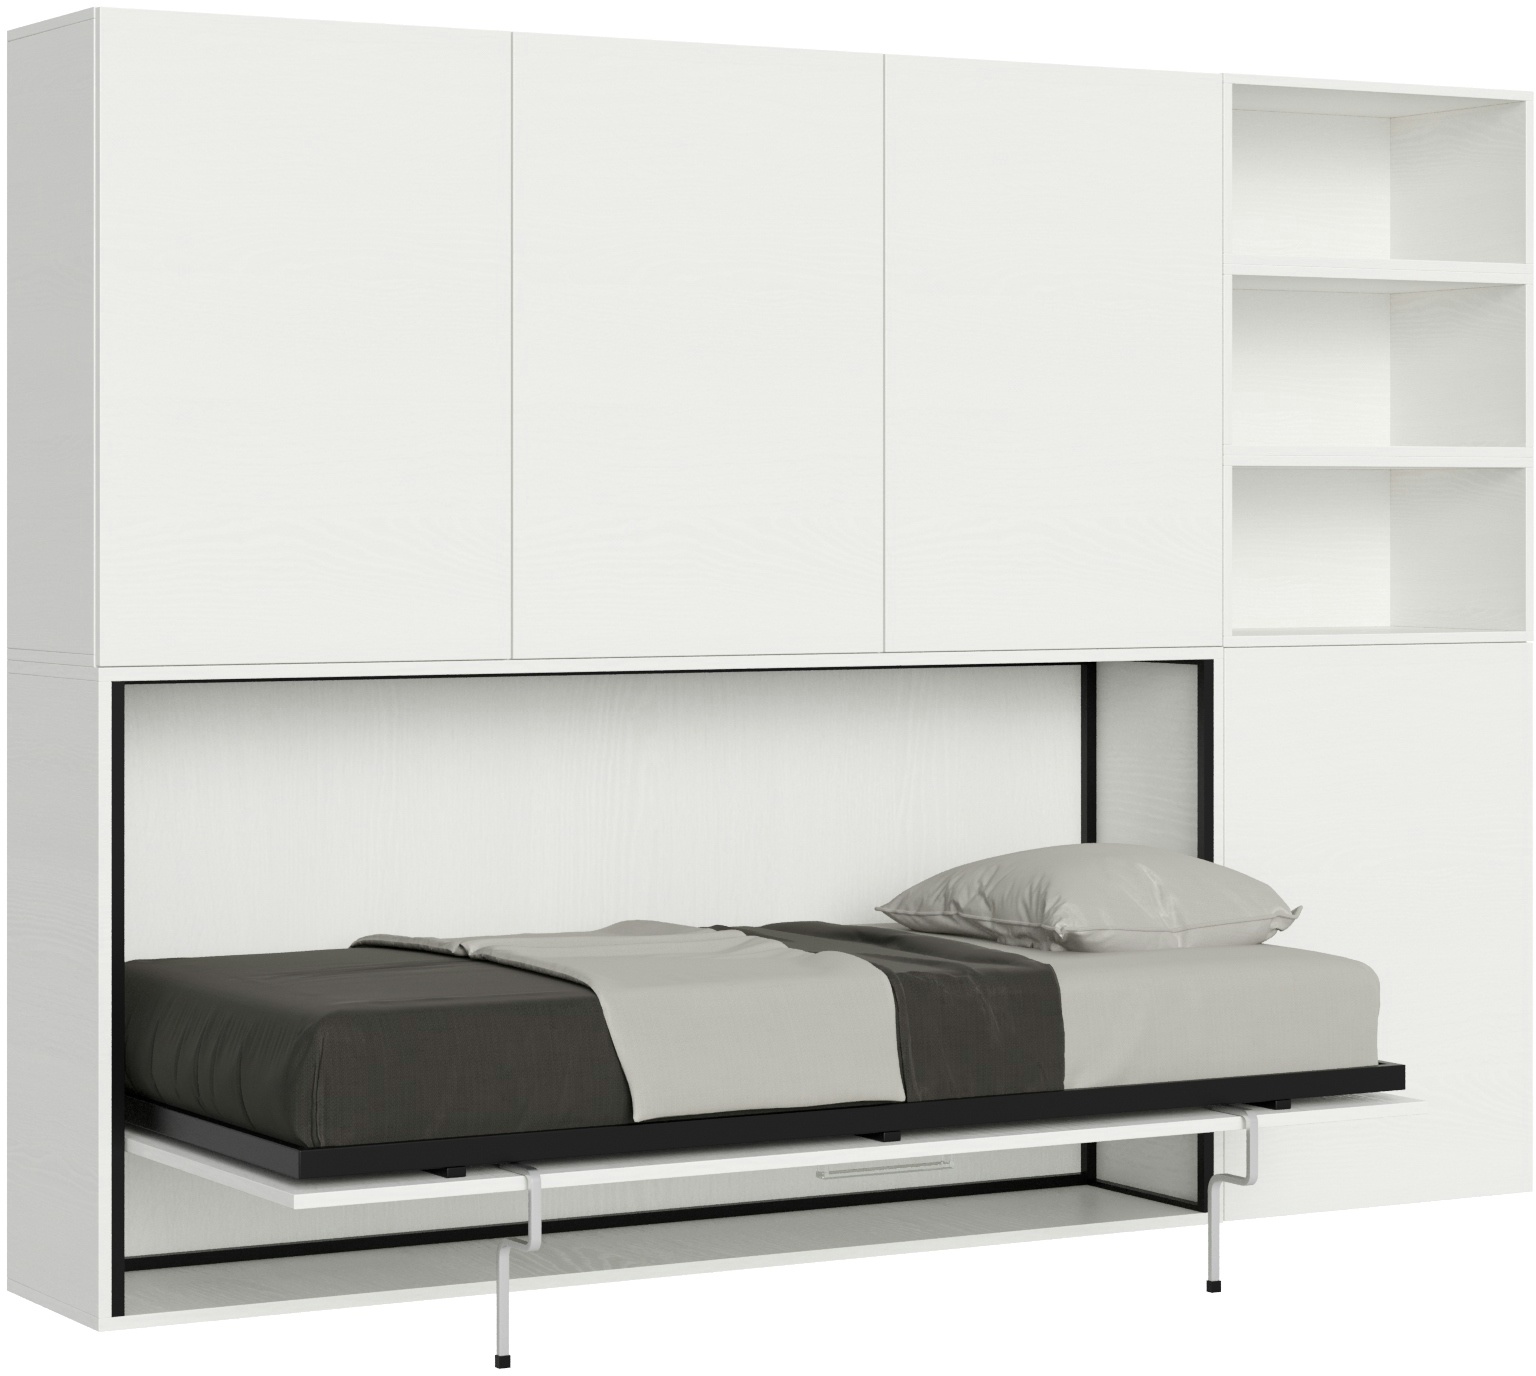 Itamoby Kando horizontales zusammenklappbares Einzelbett, Zusammensetzung F, Esche weiß